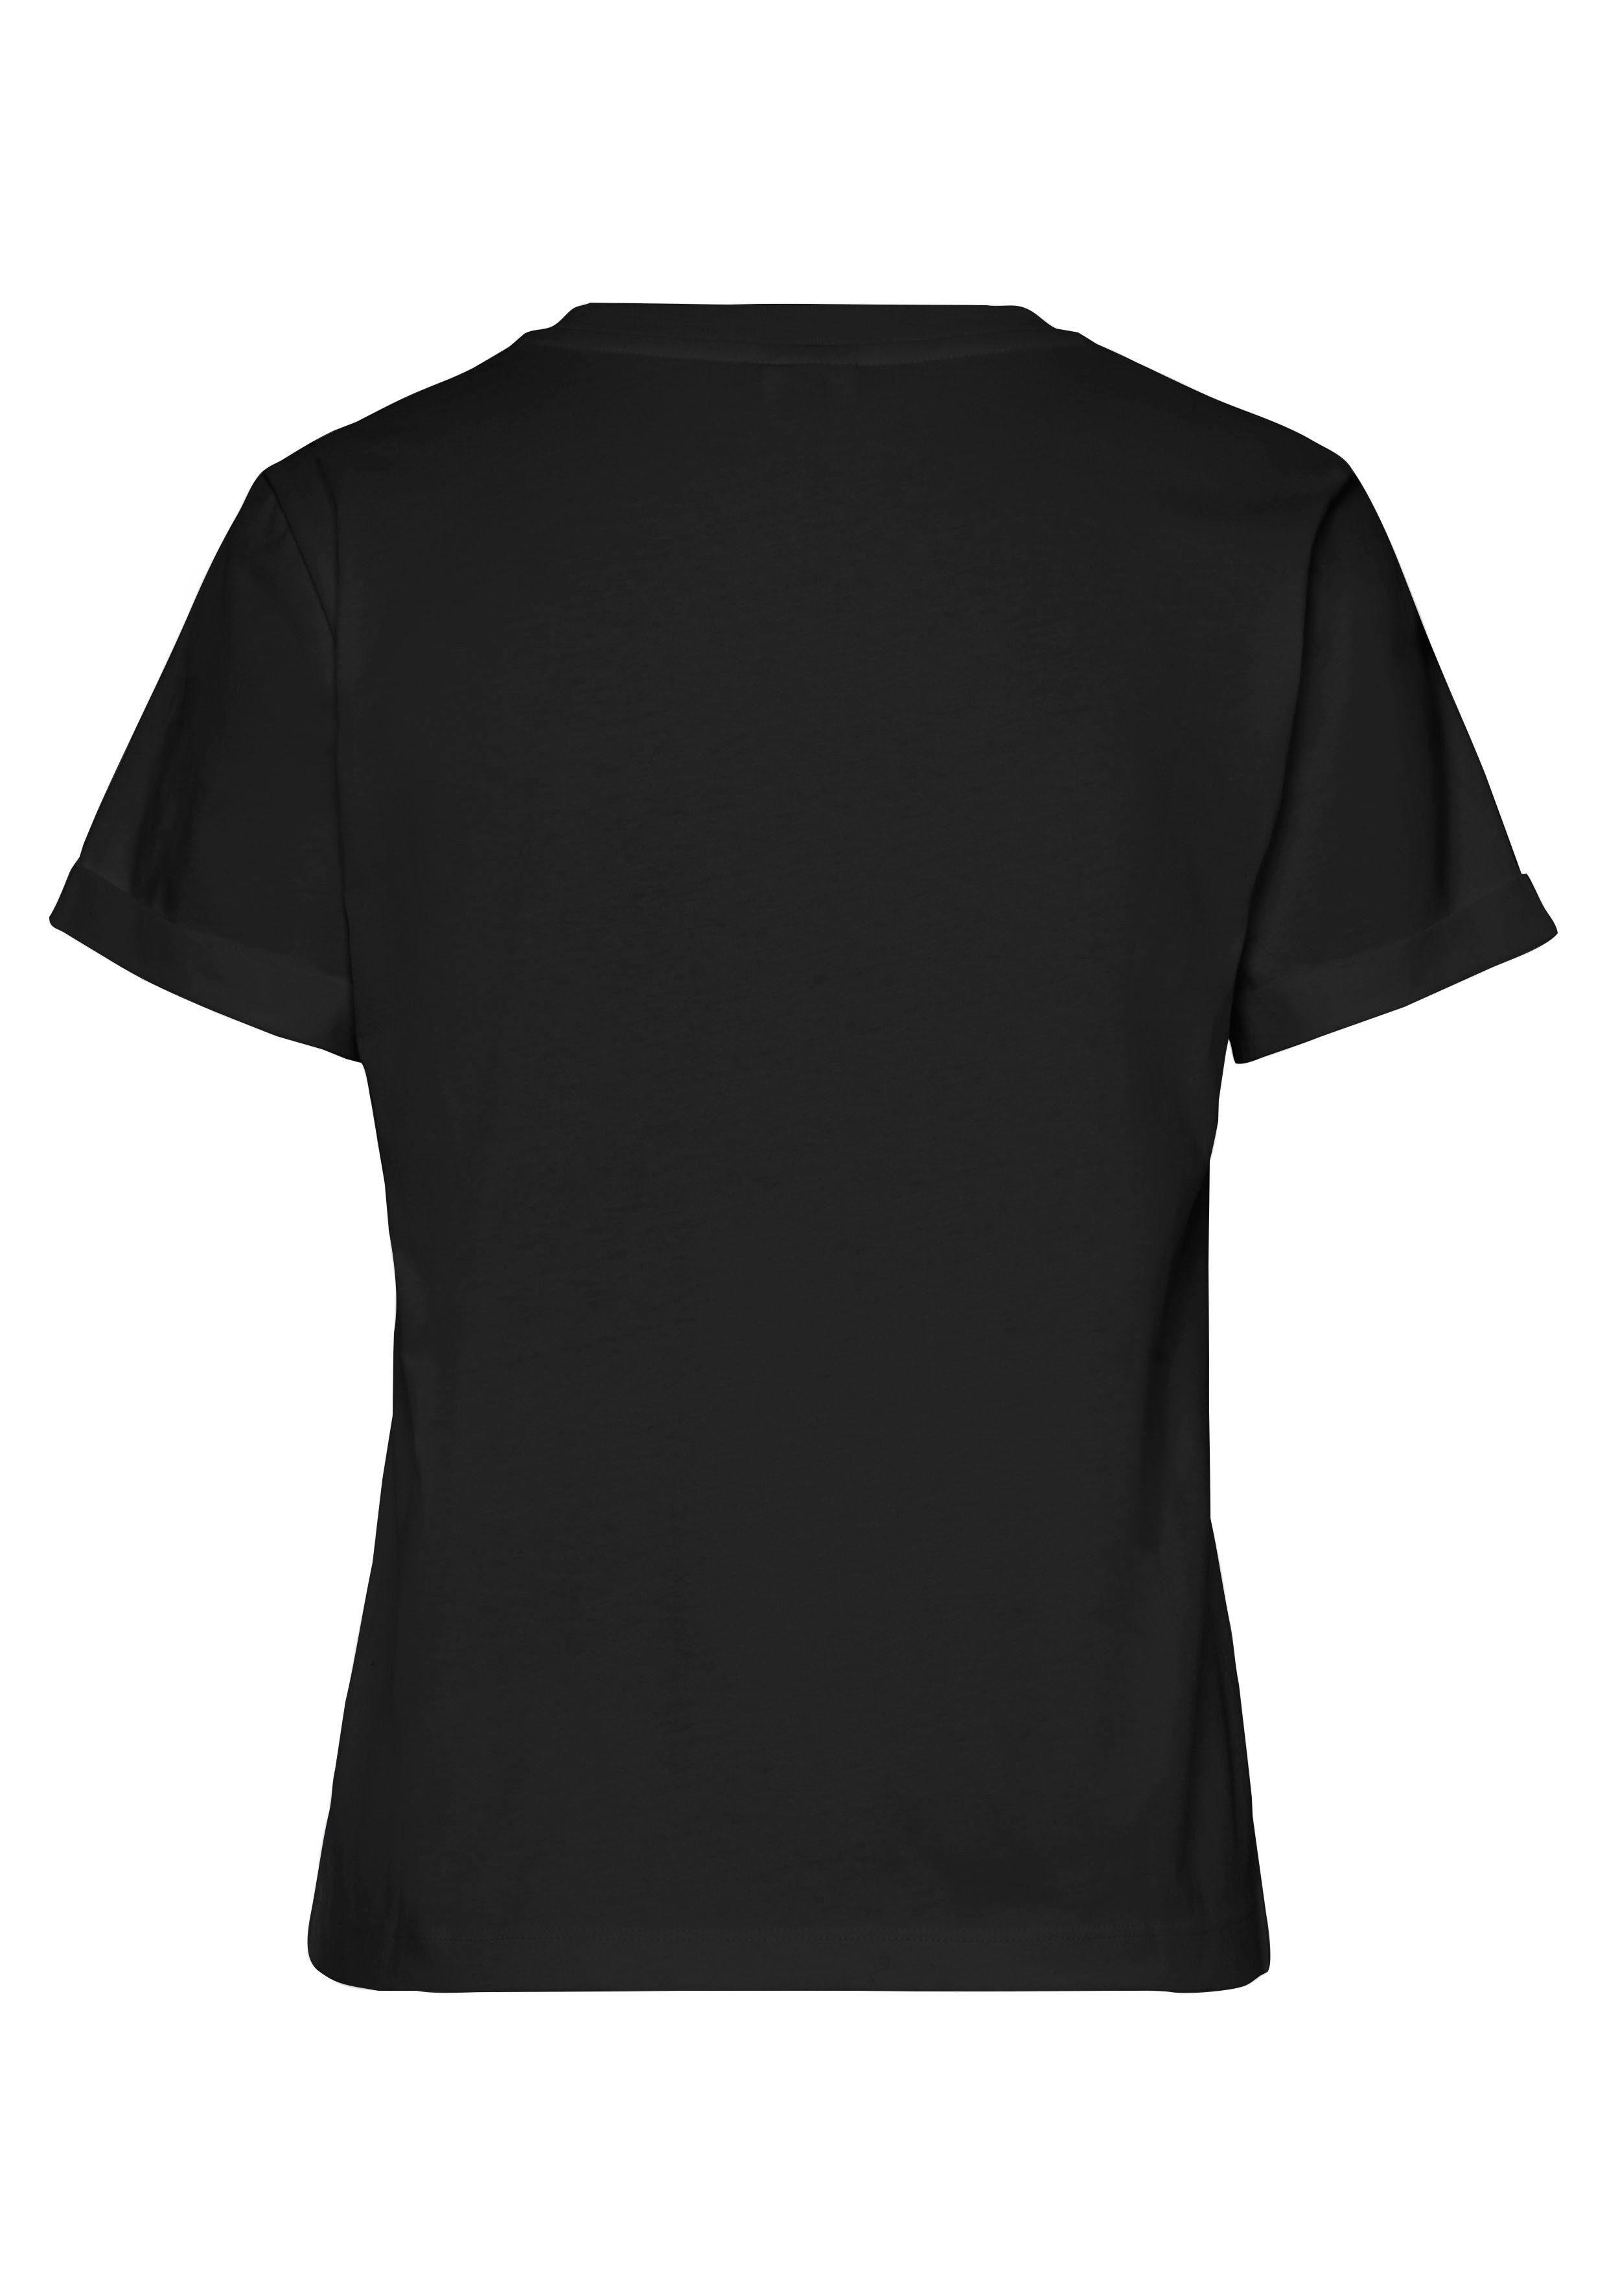 LASCANA T-Shirt mit süßer Baumwolle Herz-Stickerei, Kurzarmshirt schwarz aus